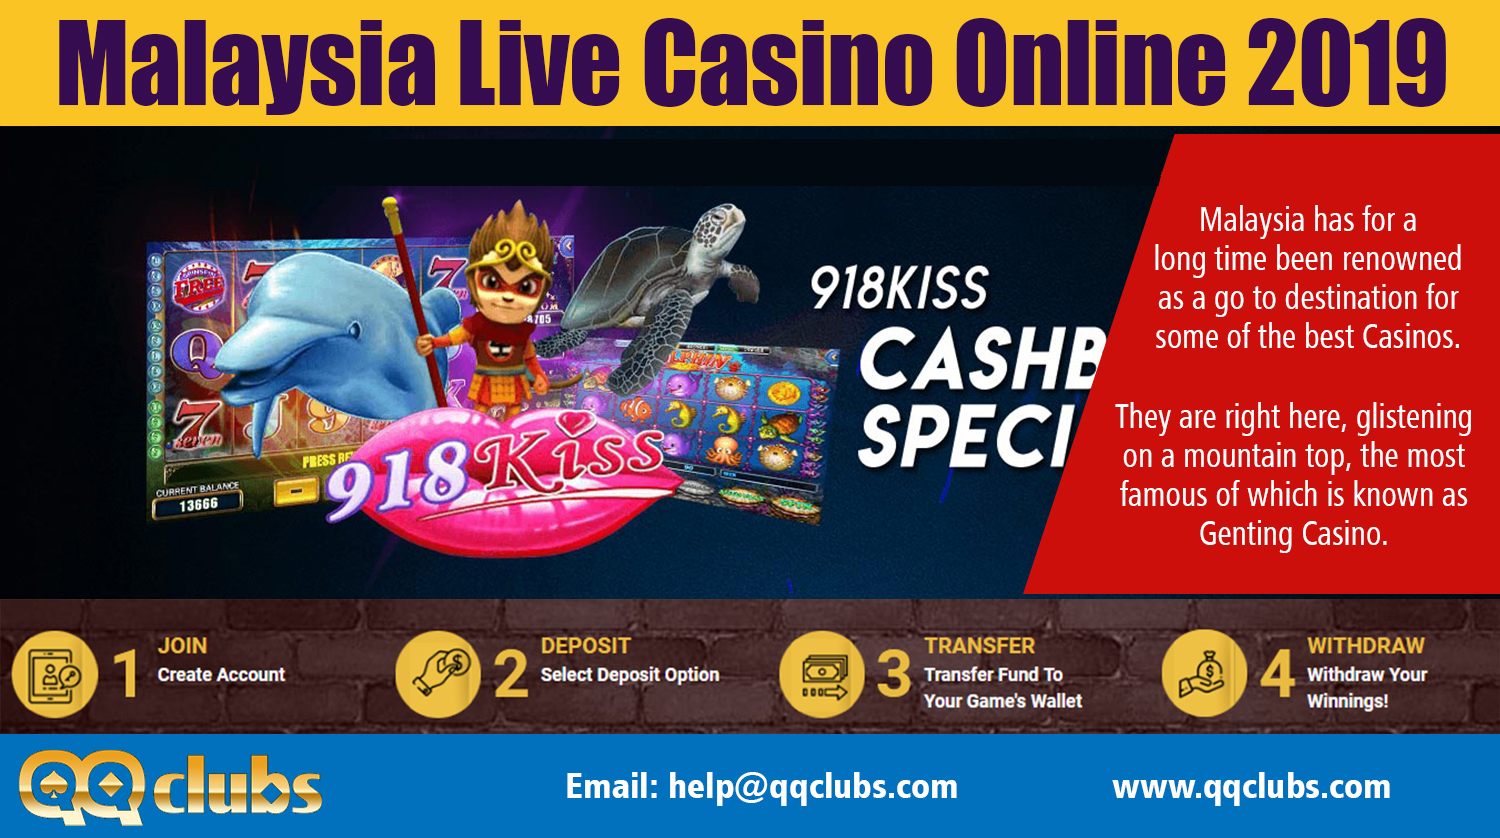 fora online casino malaysia reviews